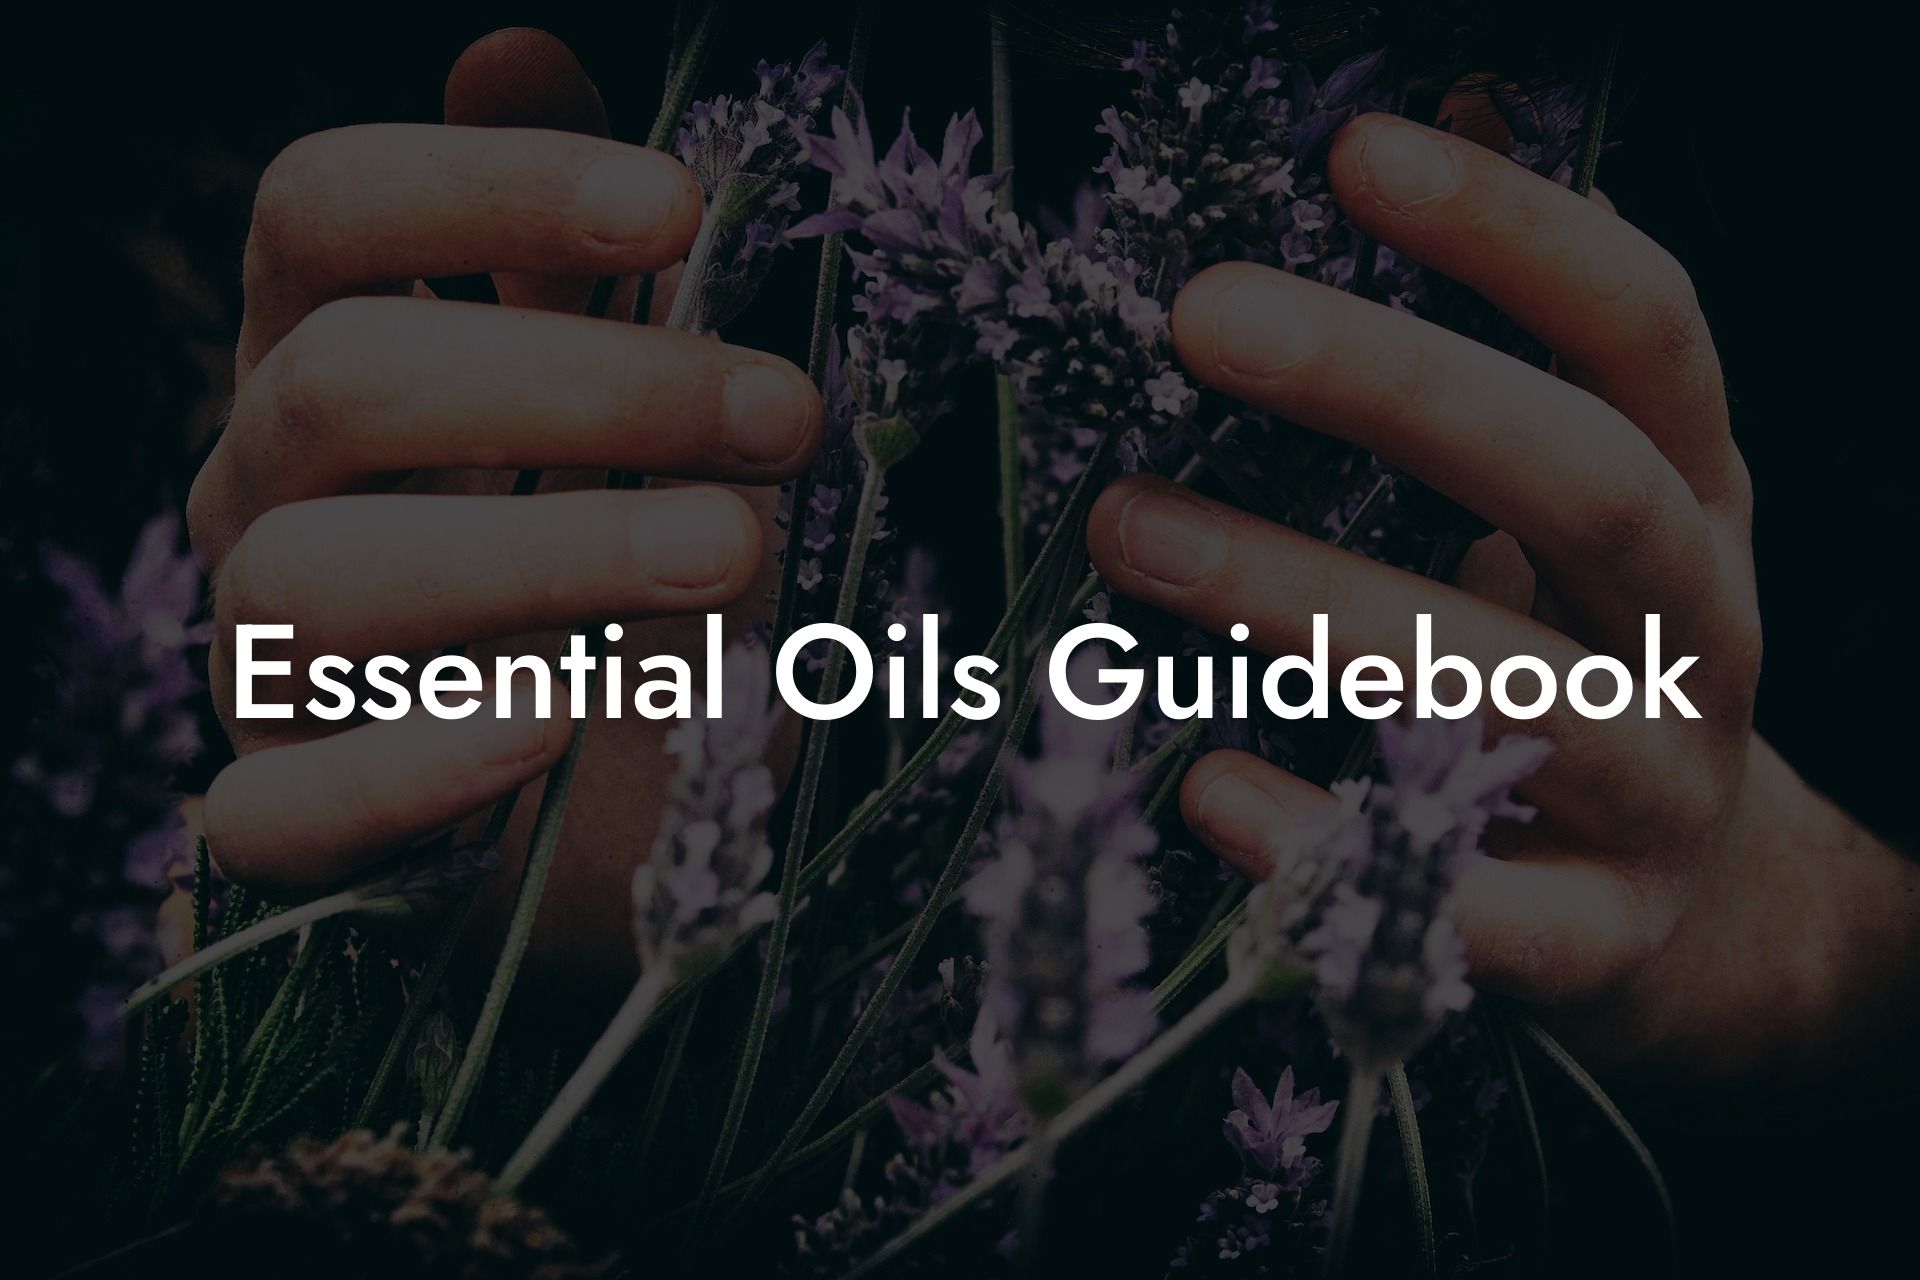 Essential Oils Guidebook